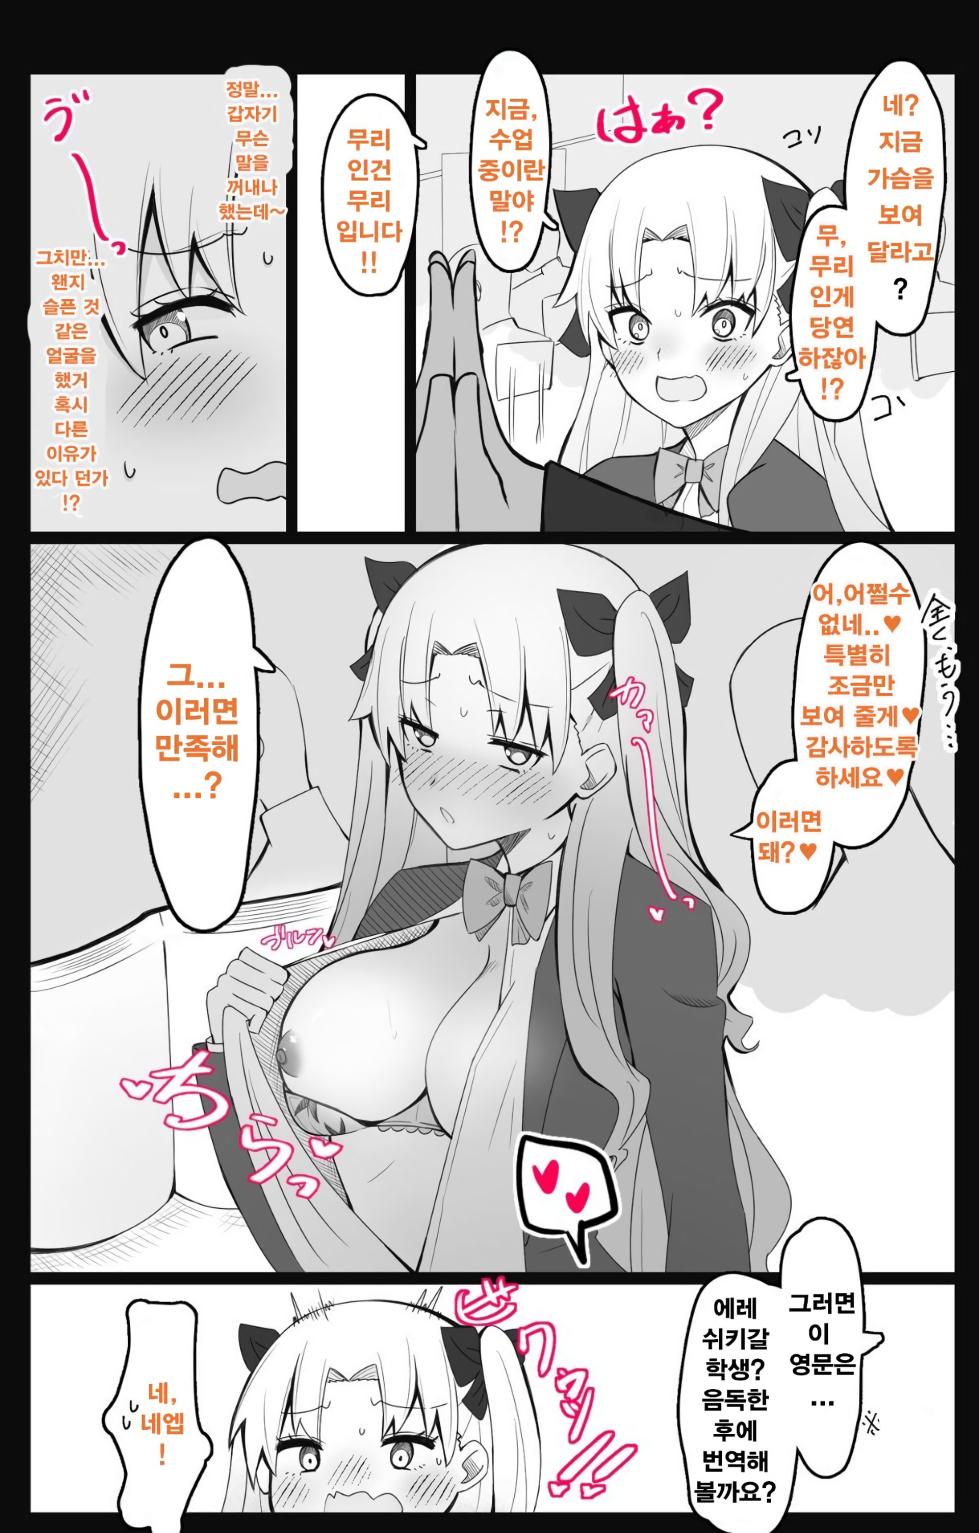 [4UU] 『칼데아 학원 BB채널부』 02~에레쉬키갈 편 (Fate/Grand Order) - Page 3